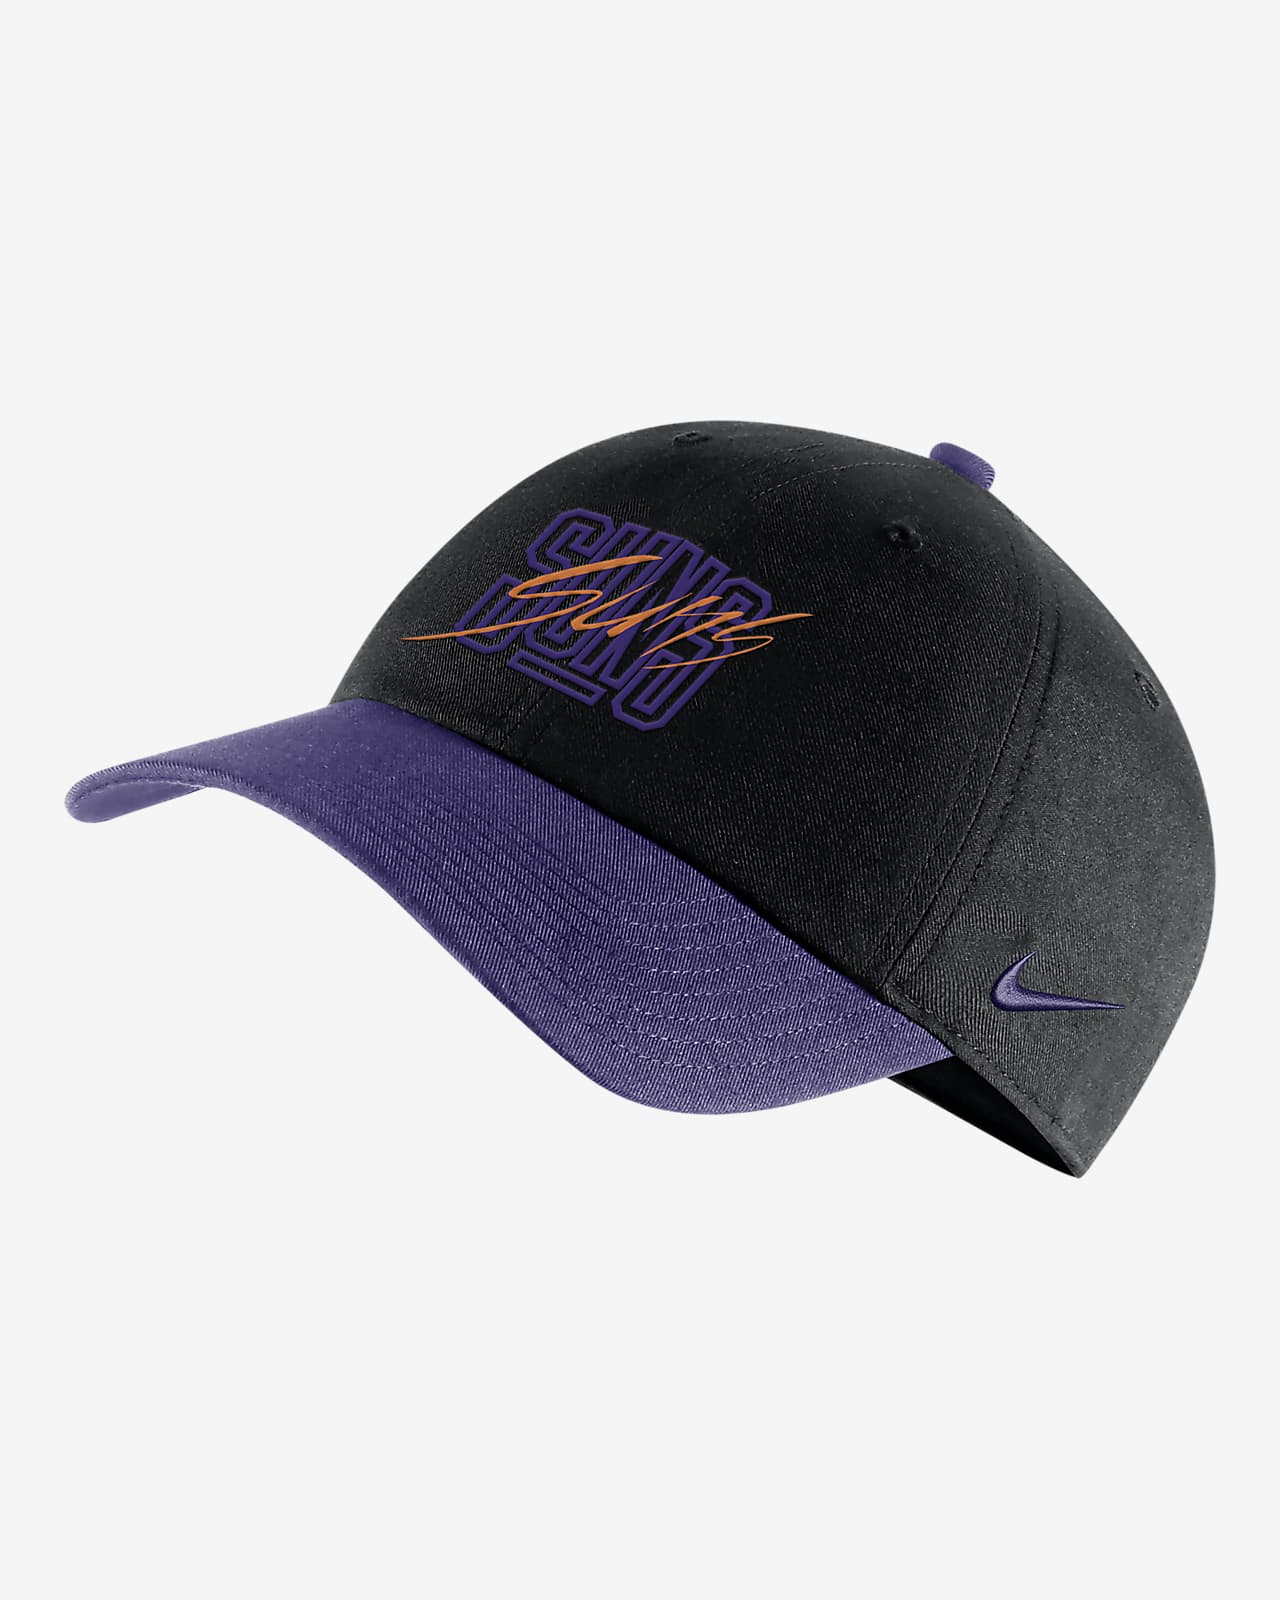 Phoenix Suns Heritage86 Nike NBA Adjustable Hat